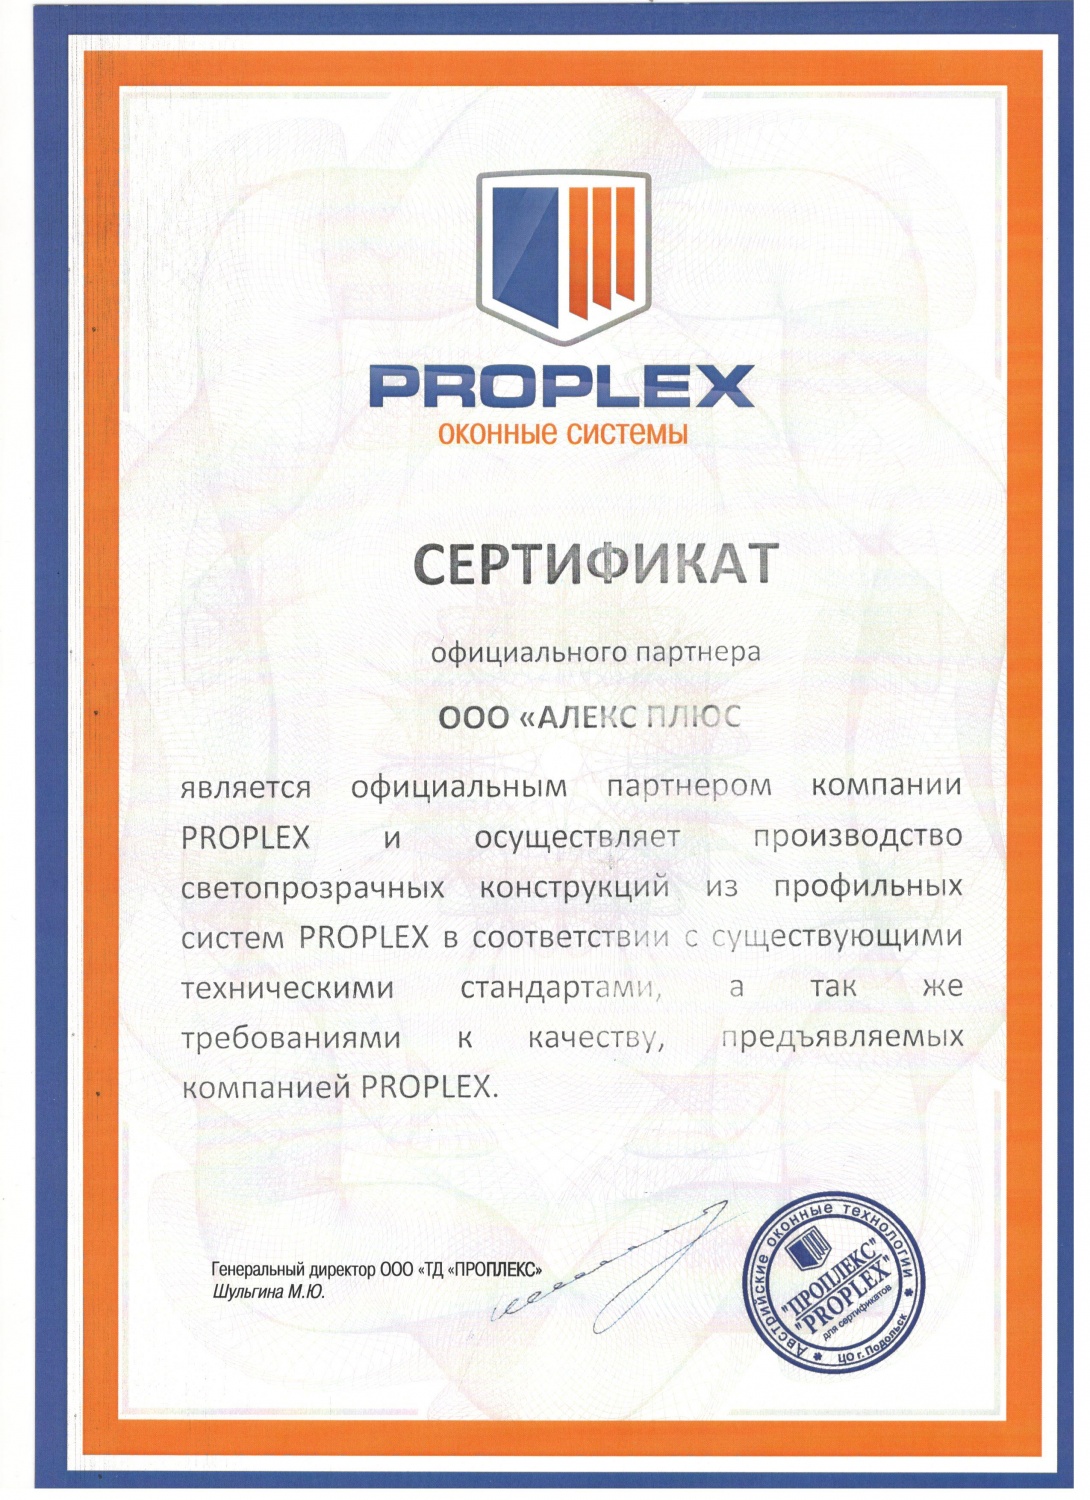 Сертификат от Proplex